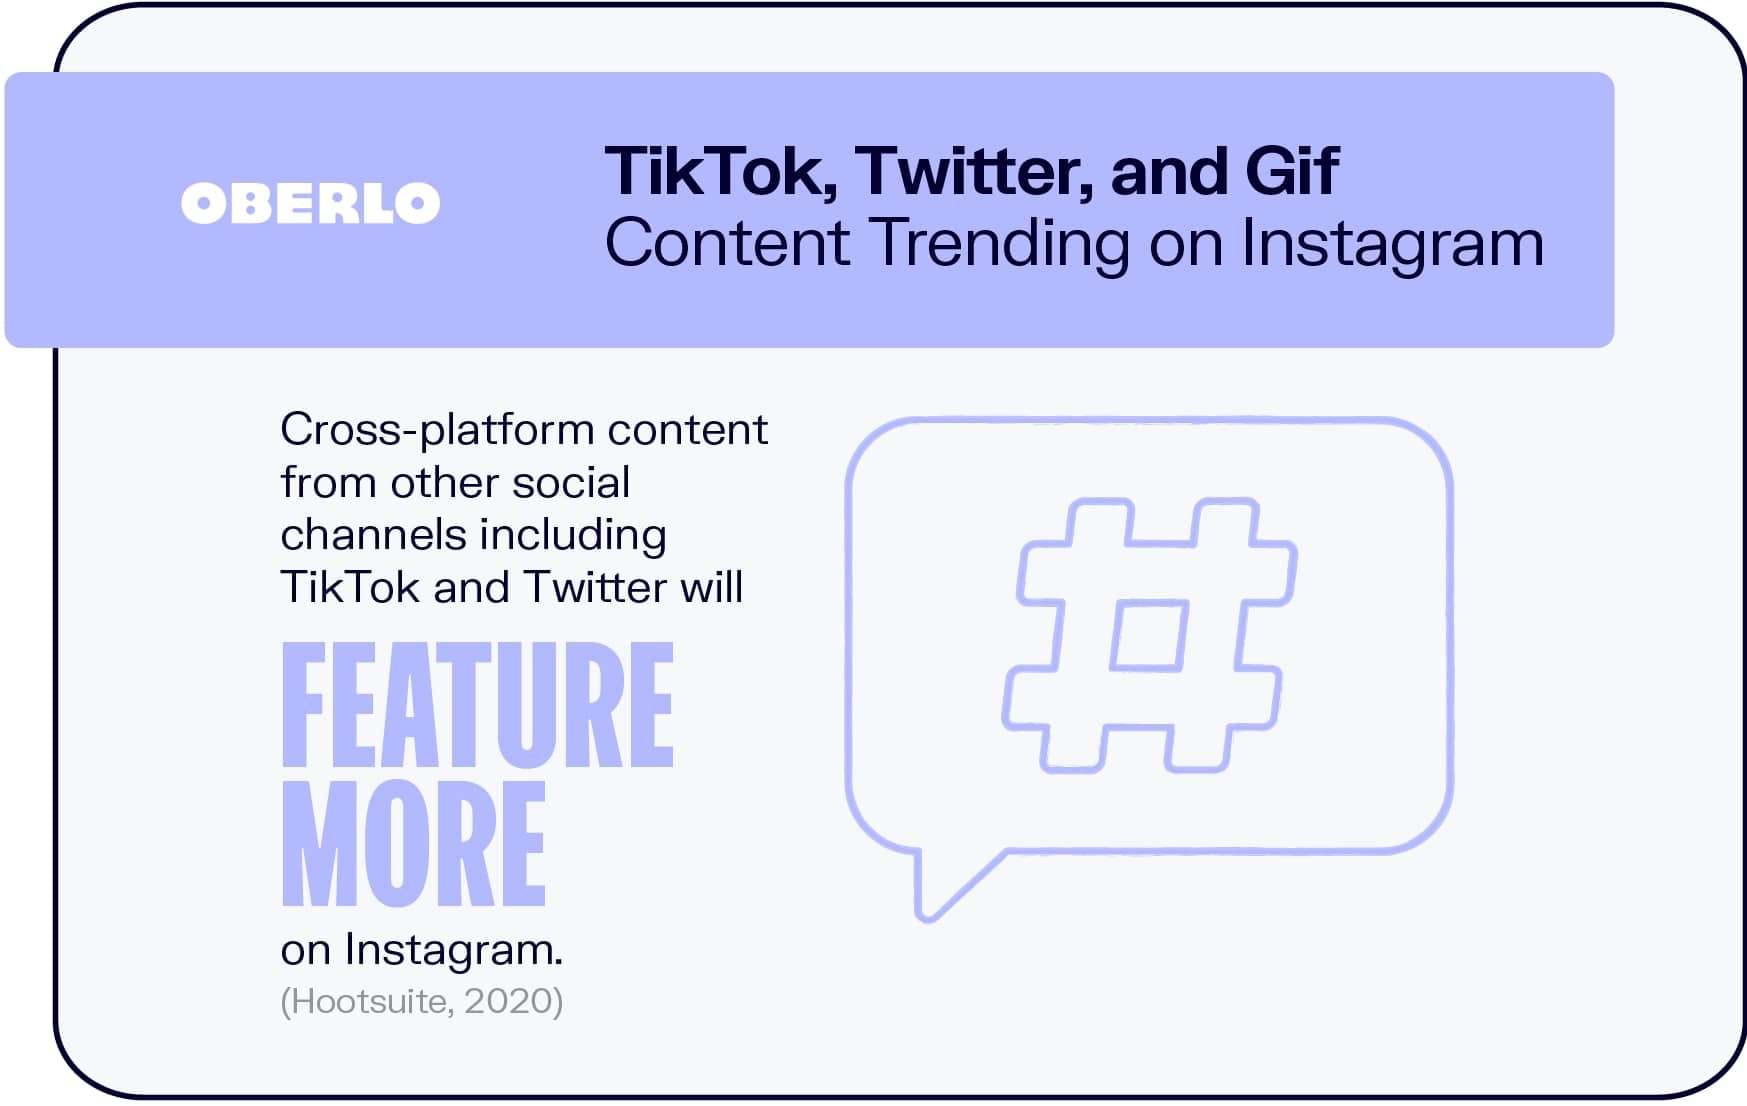 Tendencias de contenido de TikTok, Twitter y Gif en Instagram